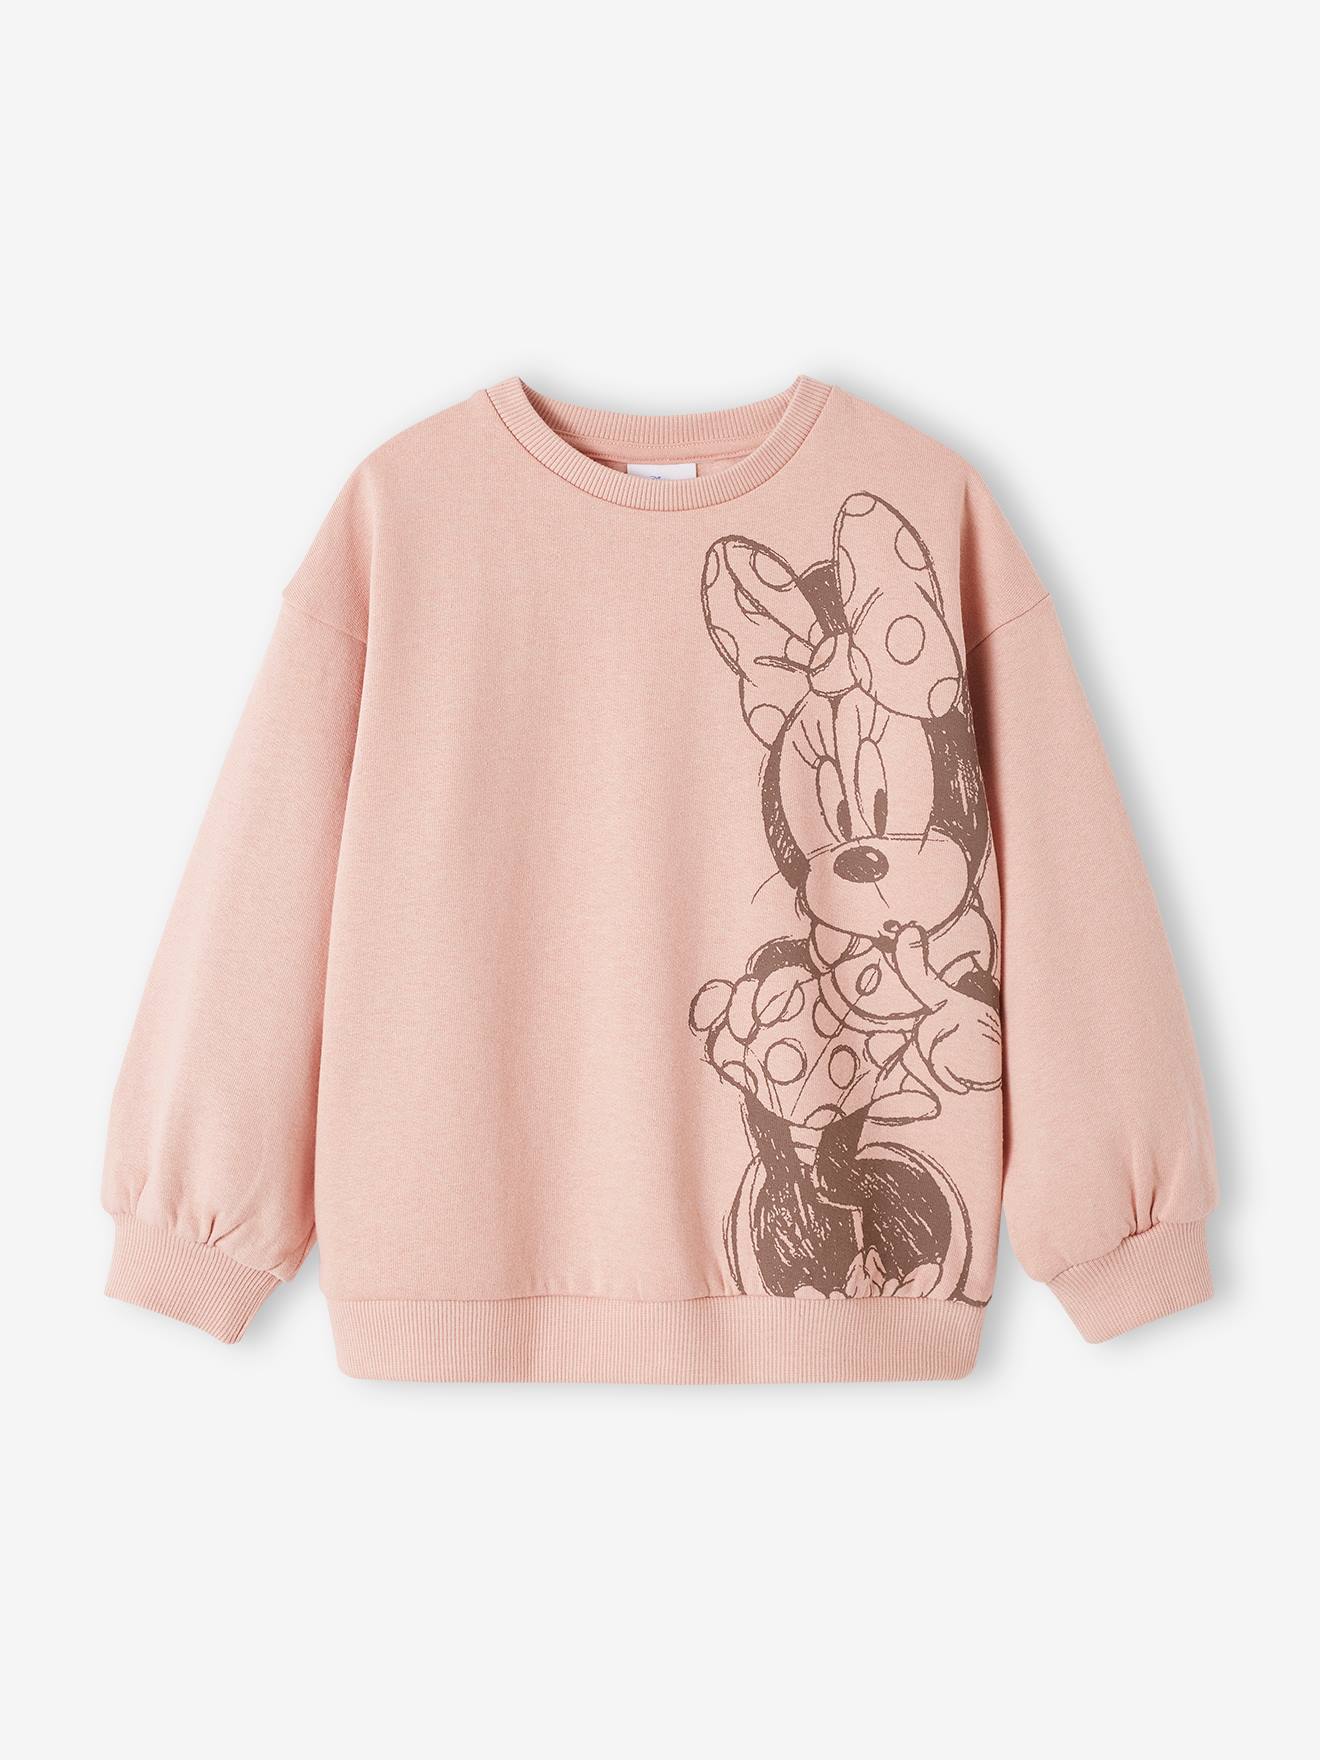 Kinder Sweatshirt Disney MINNIE MAUS pudrig von Minnie Maus